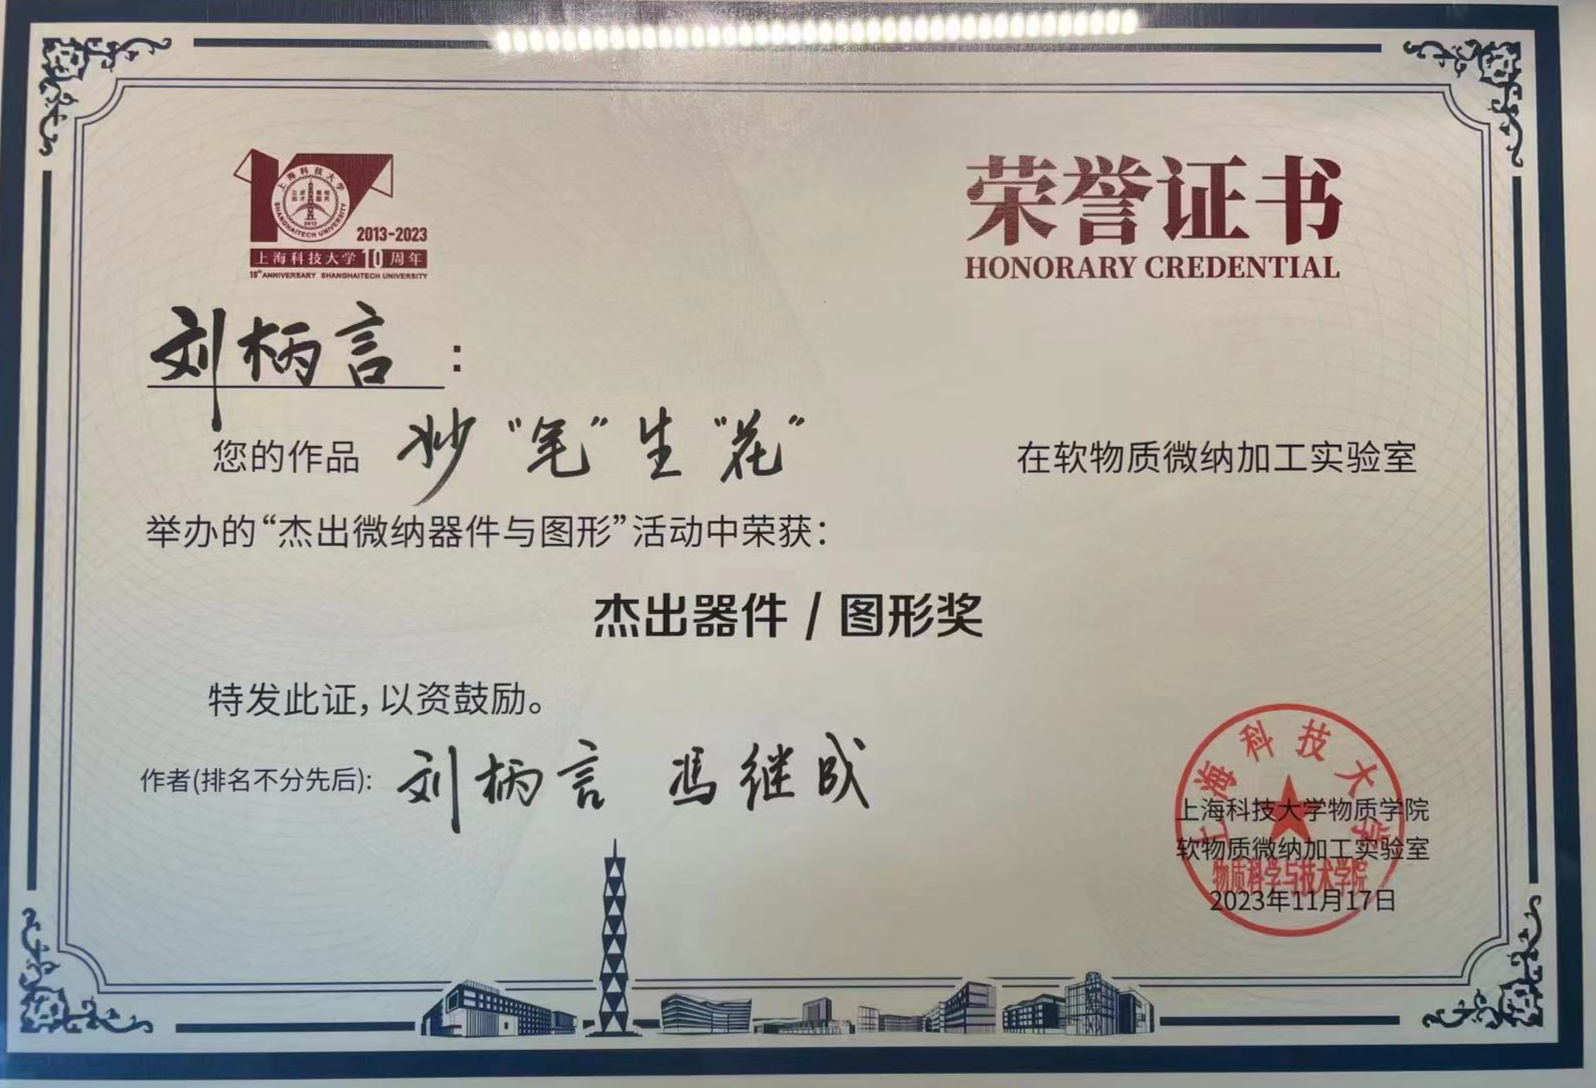 博士生刘柄言在软物质加工比赛中获得杰出器件/图形奖